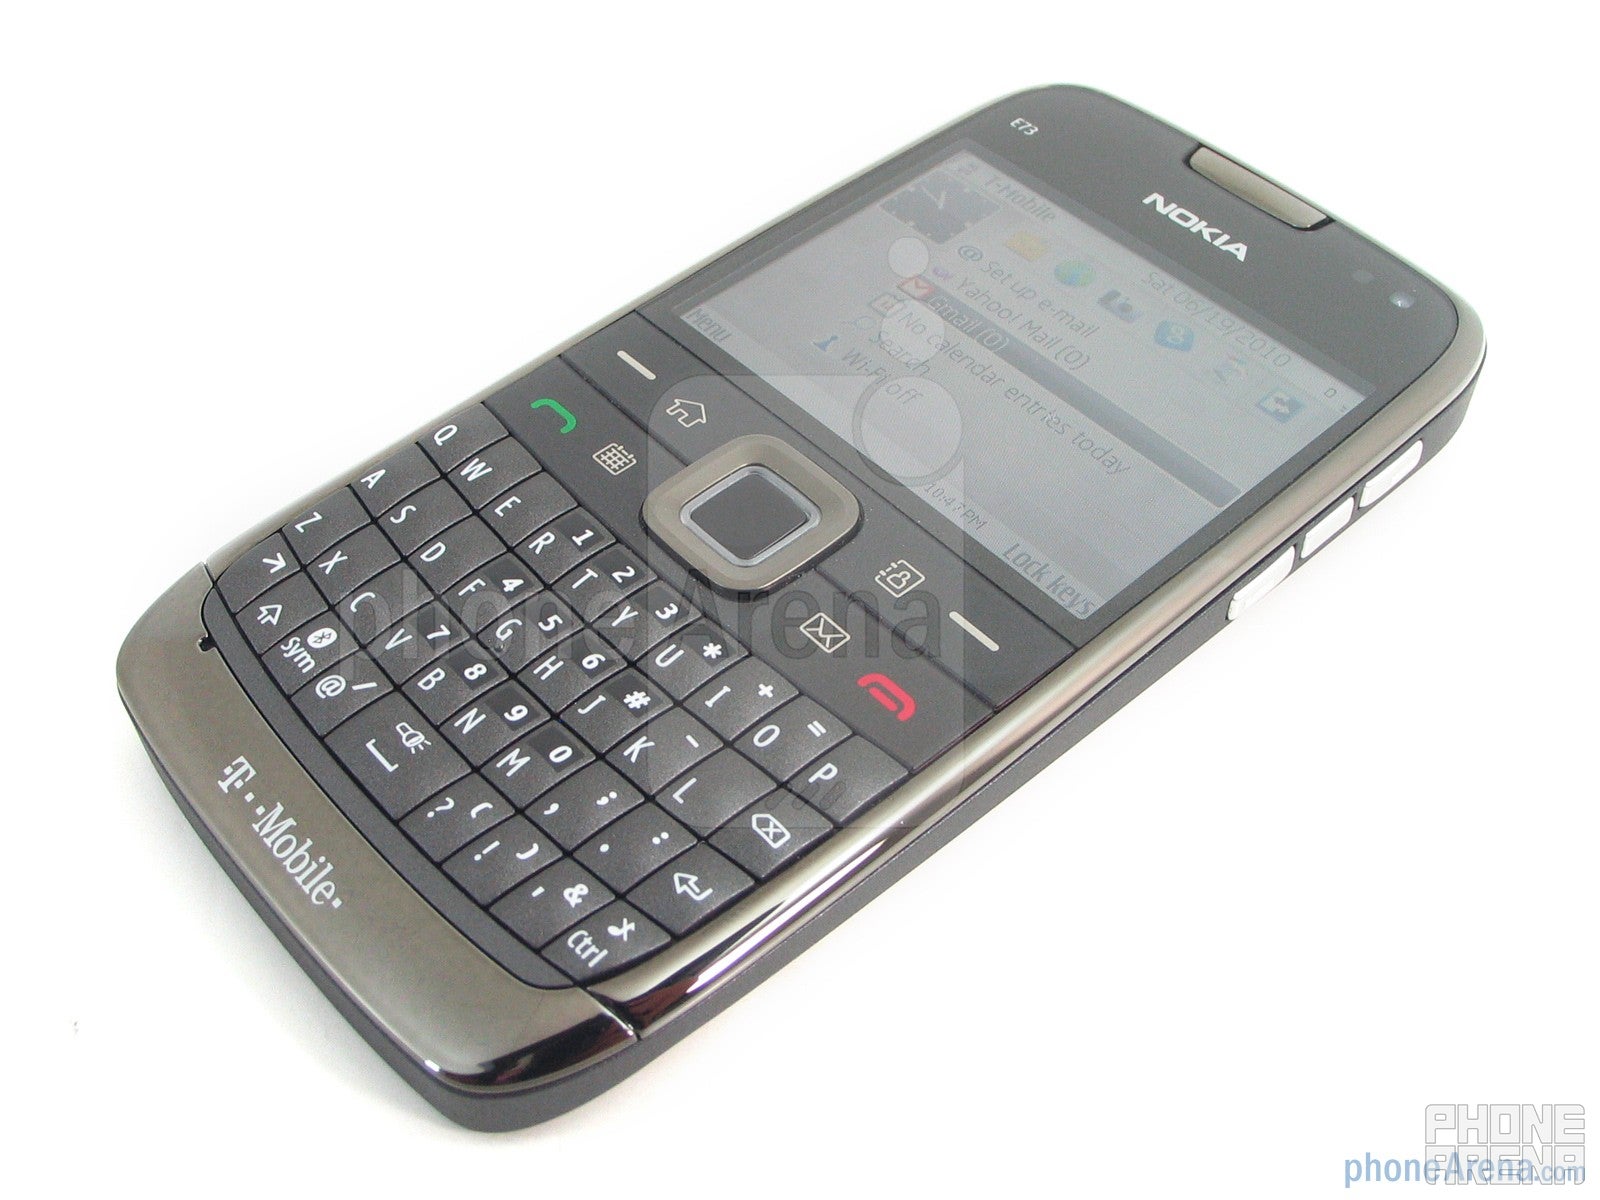 Nokia E73 Mode Review